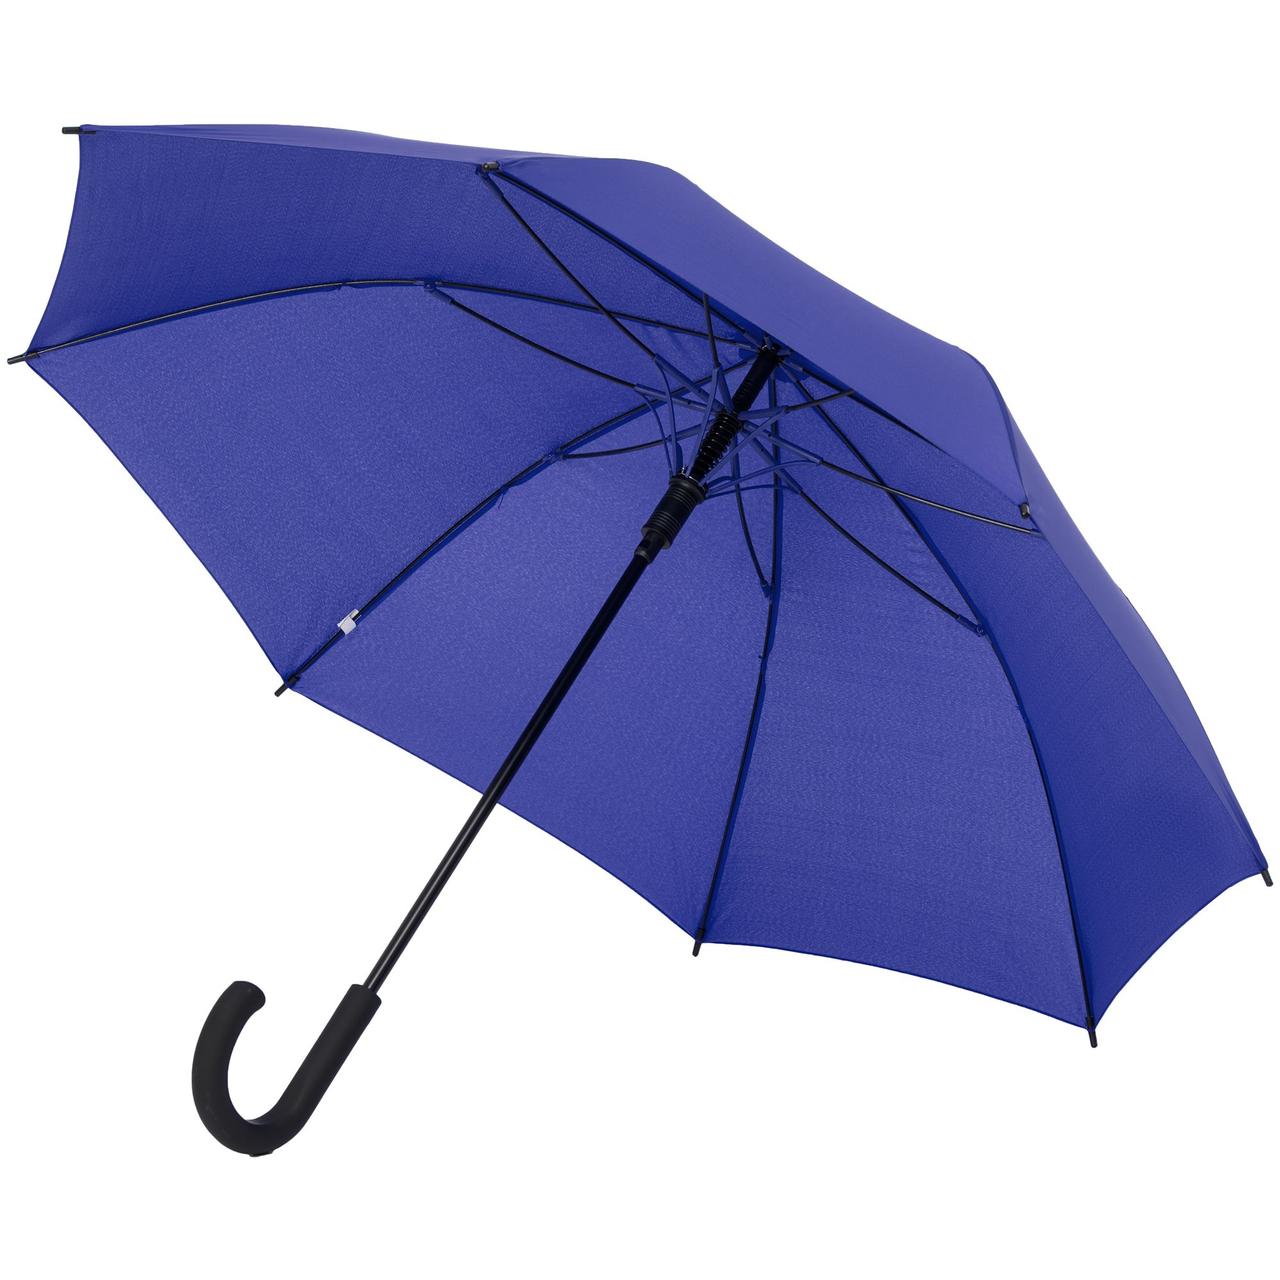 Зонт-трость с цветными спицами Bespoke, синий (артикул 12372.44)